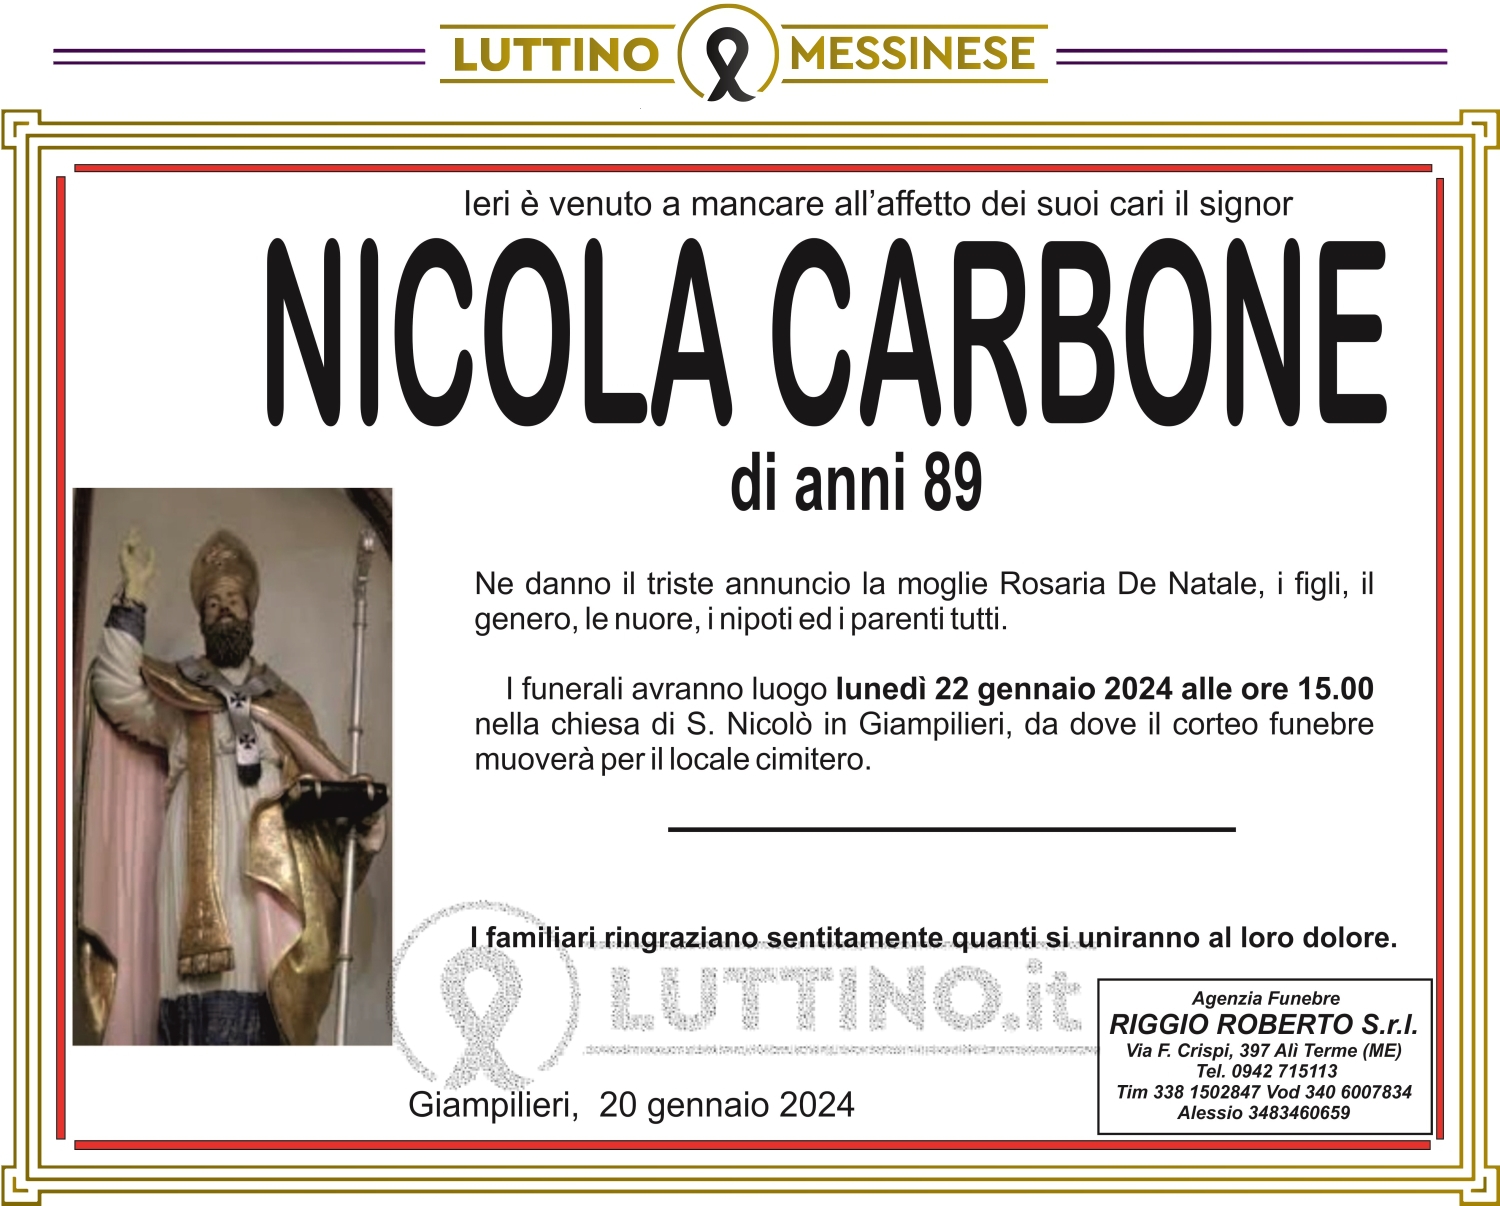 Nicola Carbone